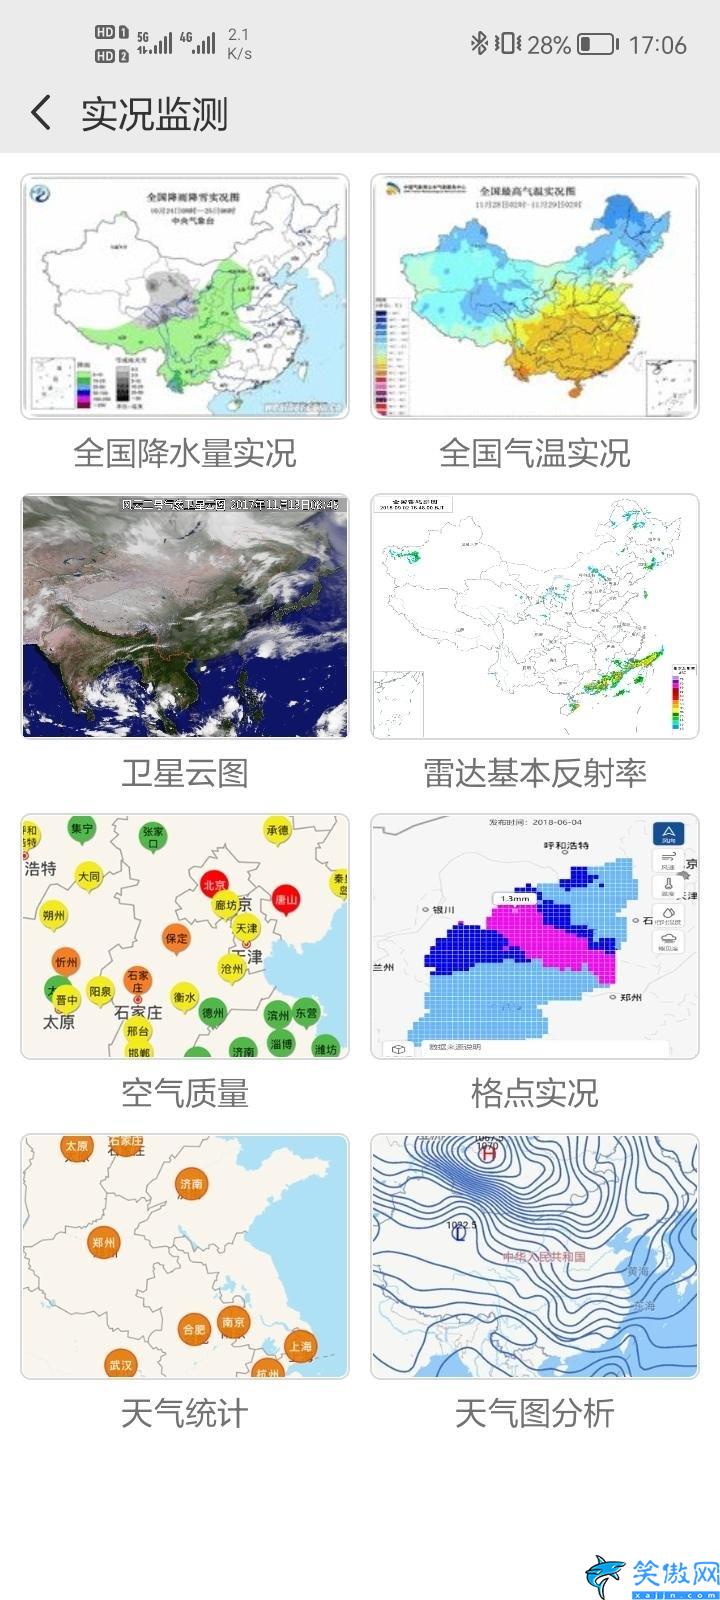 最准确的天气预报软件是哪一款 ,中国国家天气预报推荐